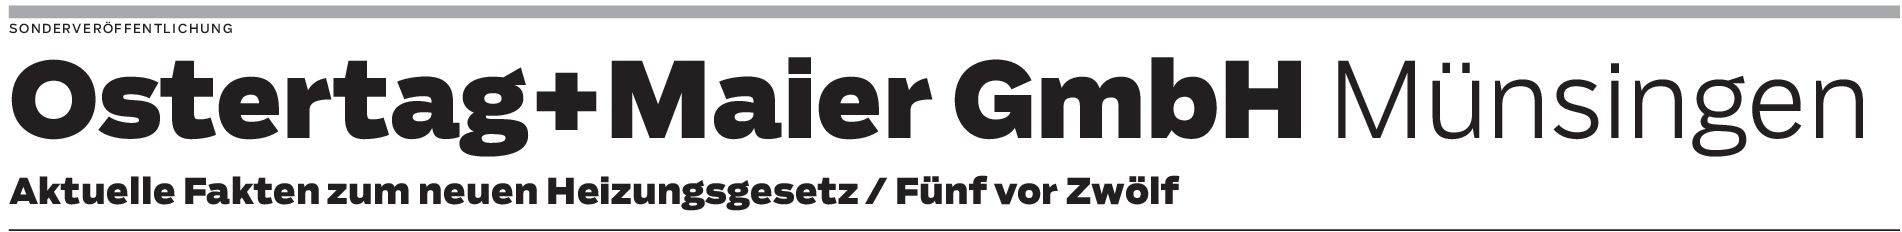 Ostertag+Maier GmbH Münsingen: Neues Heizungsgesetz